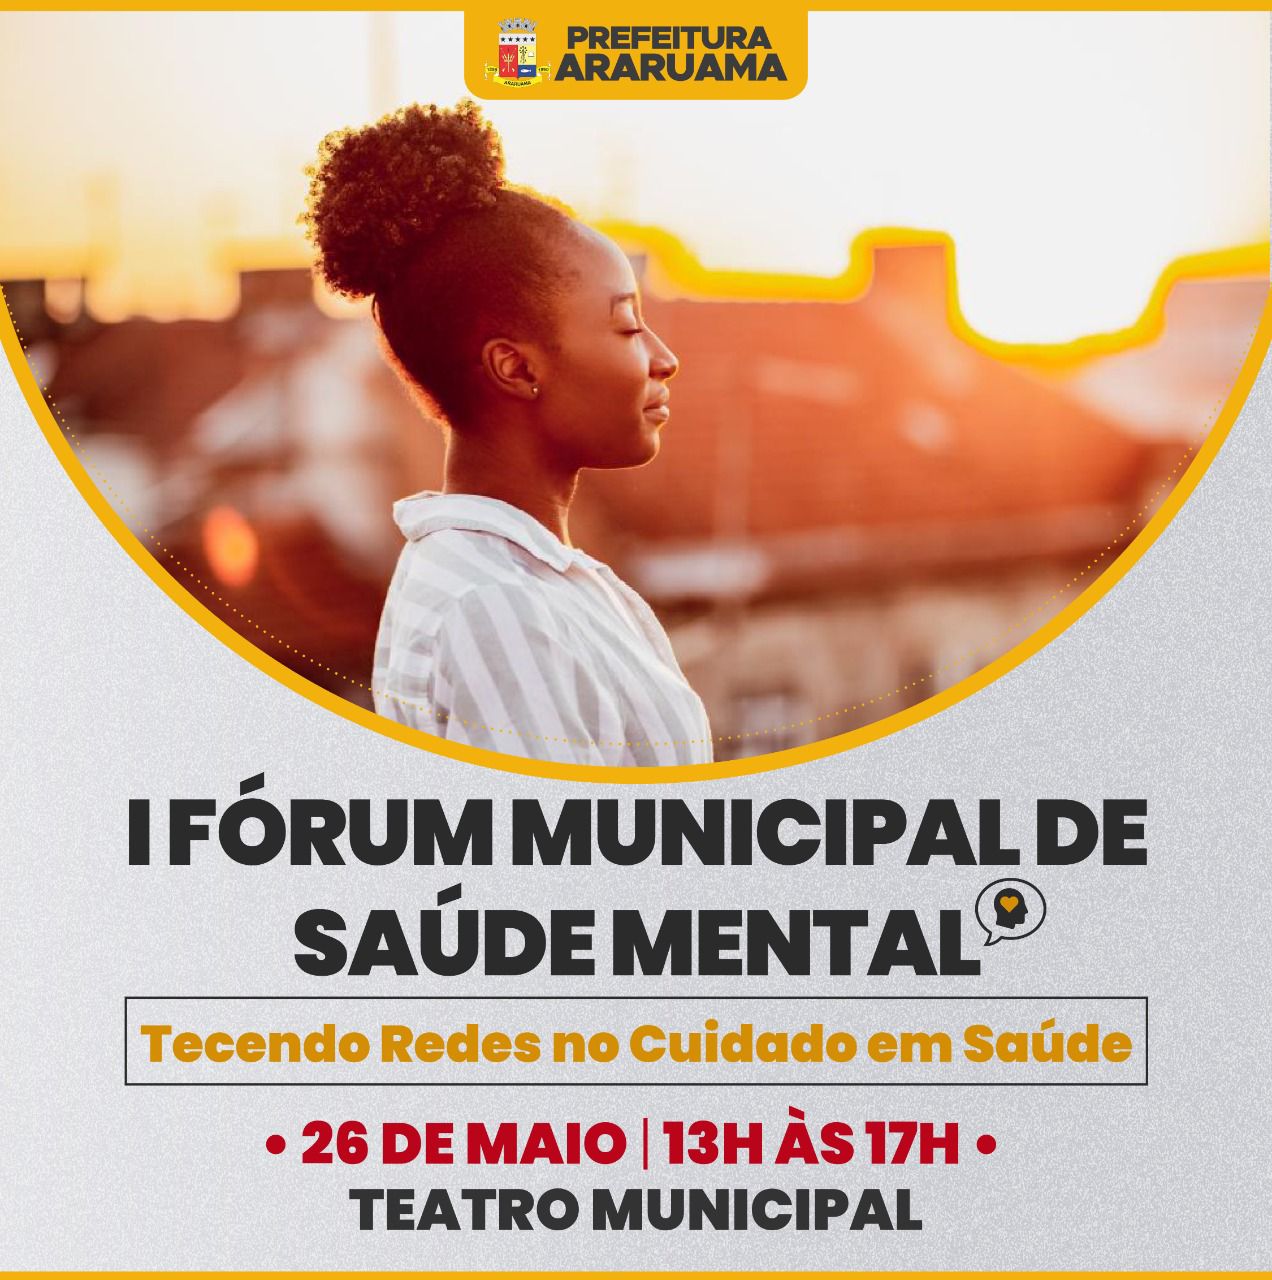 Prefeitura de Araruama vai realizar o I Fórum Municipal de Saúde Mental